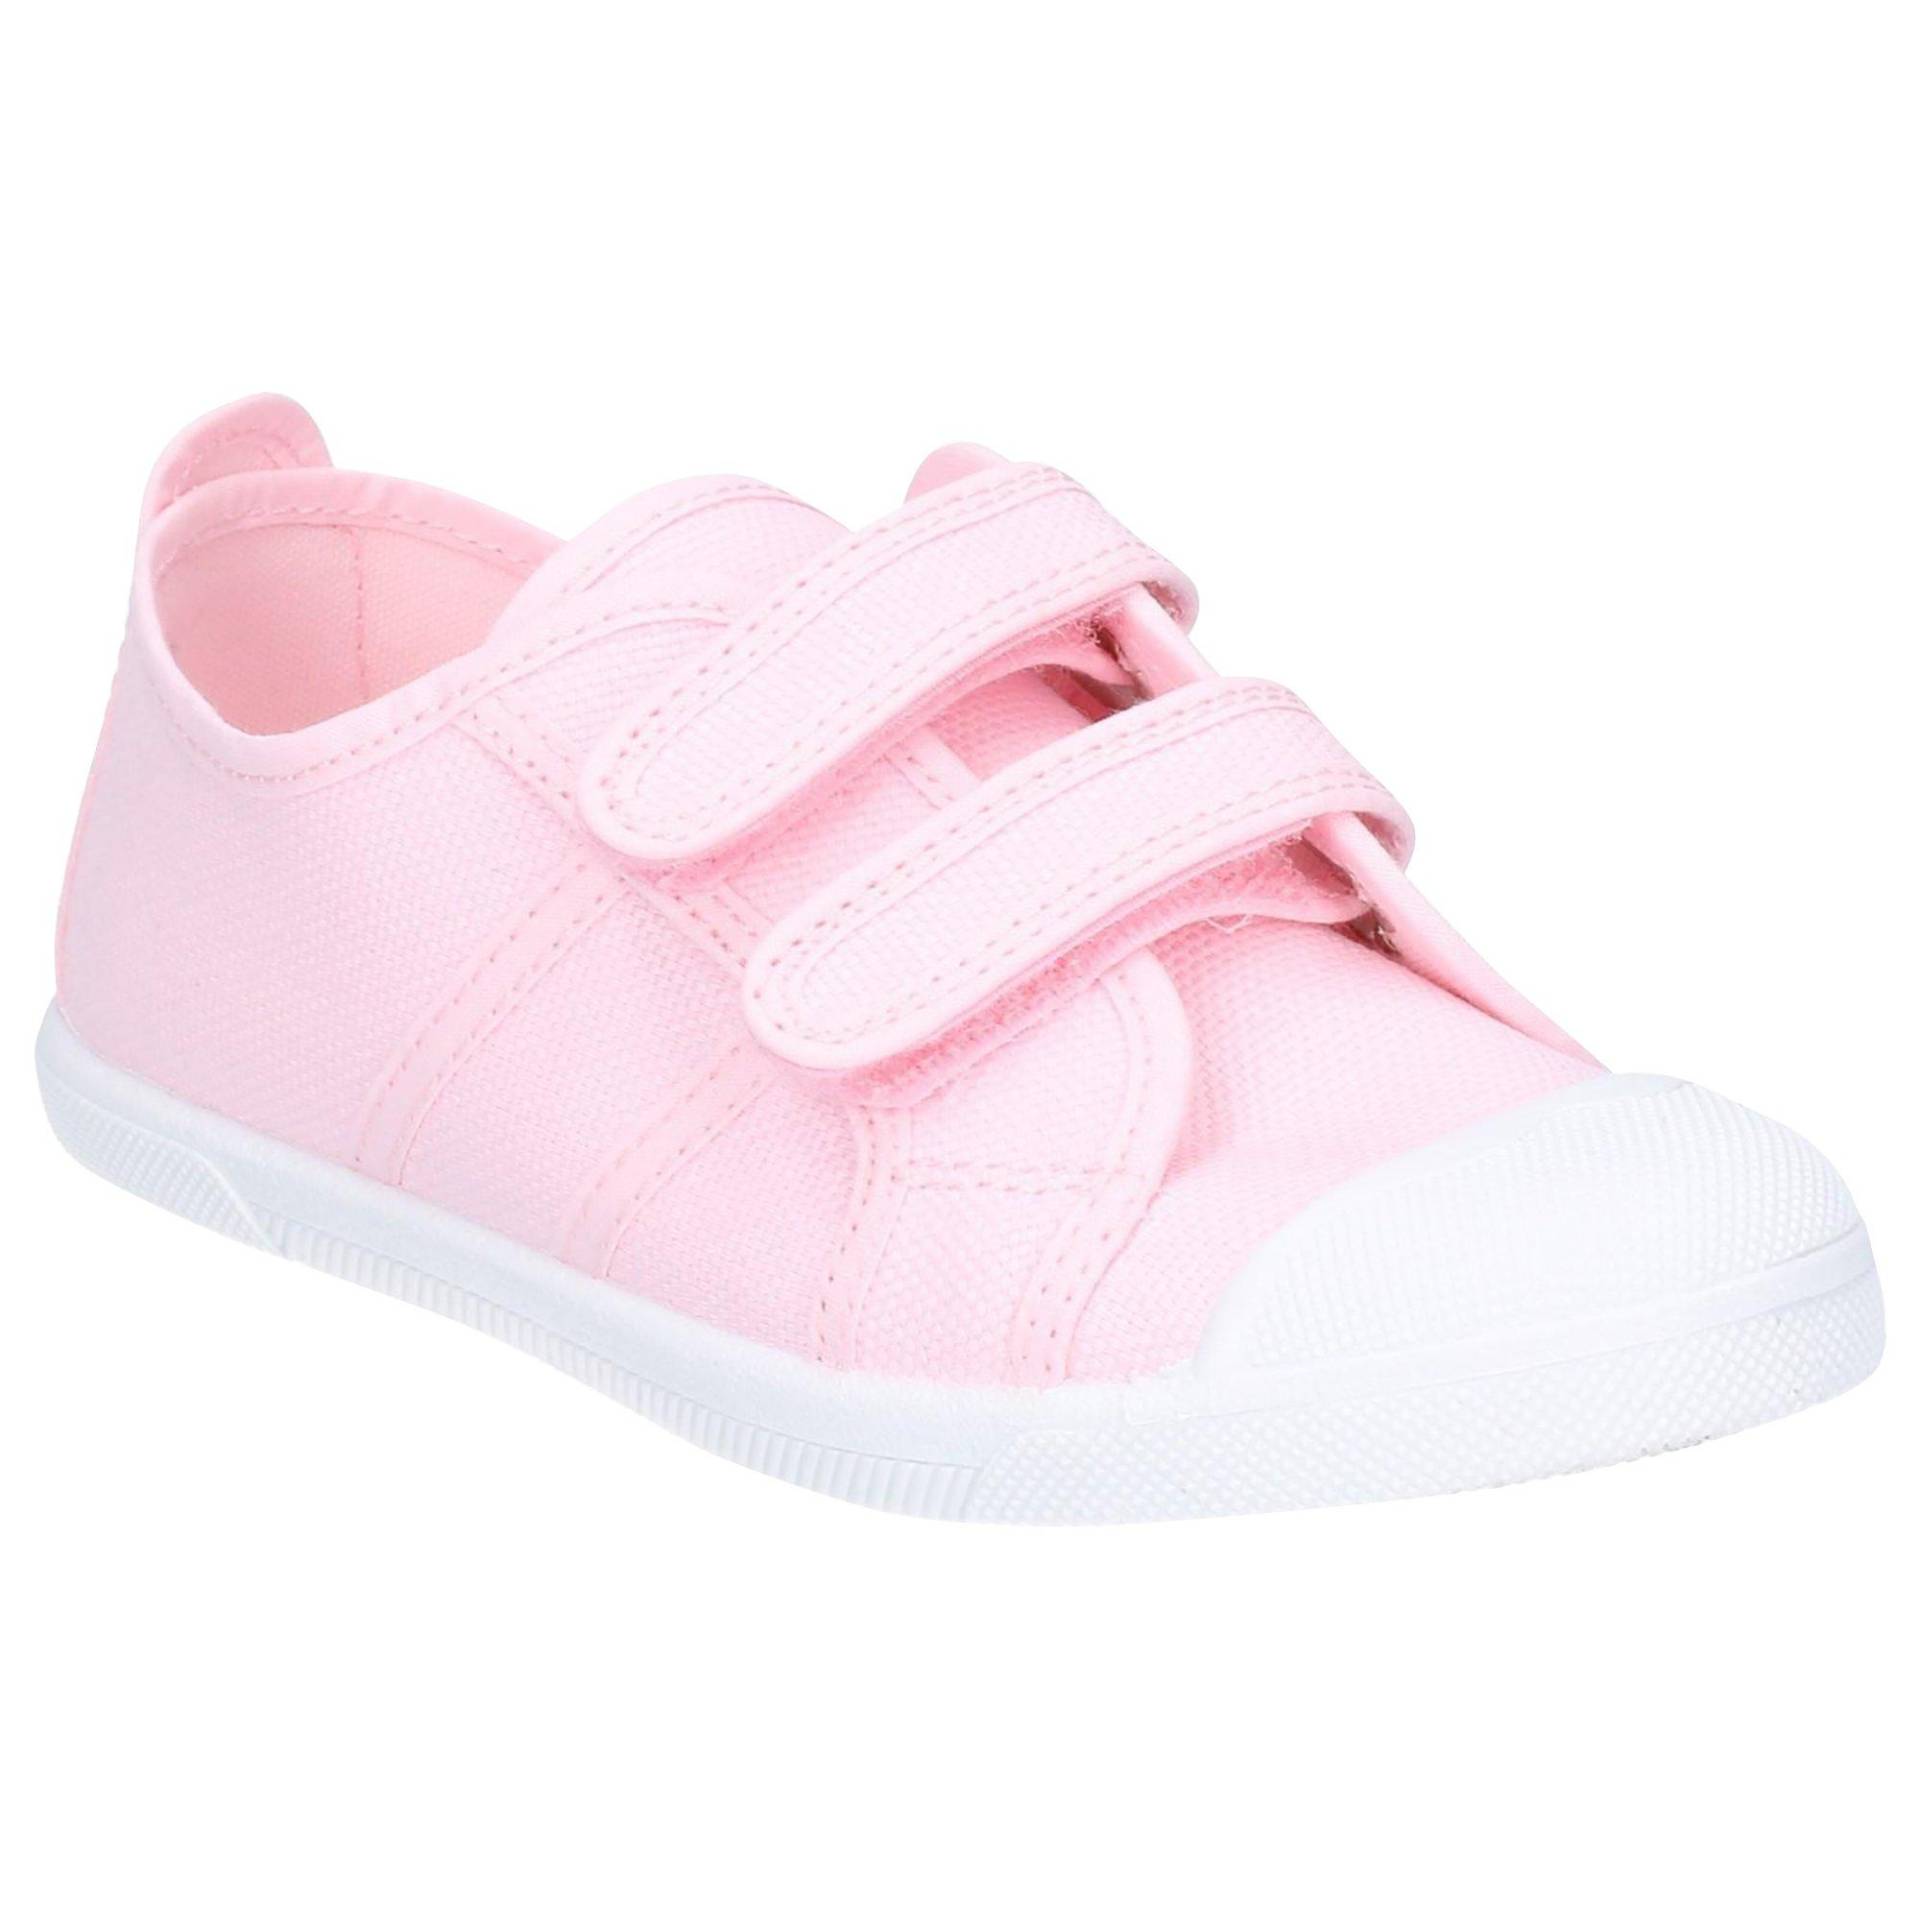 Schuhe Sasha Unisex Pink 24 von Flossy